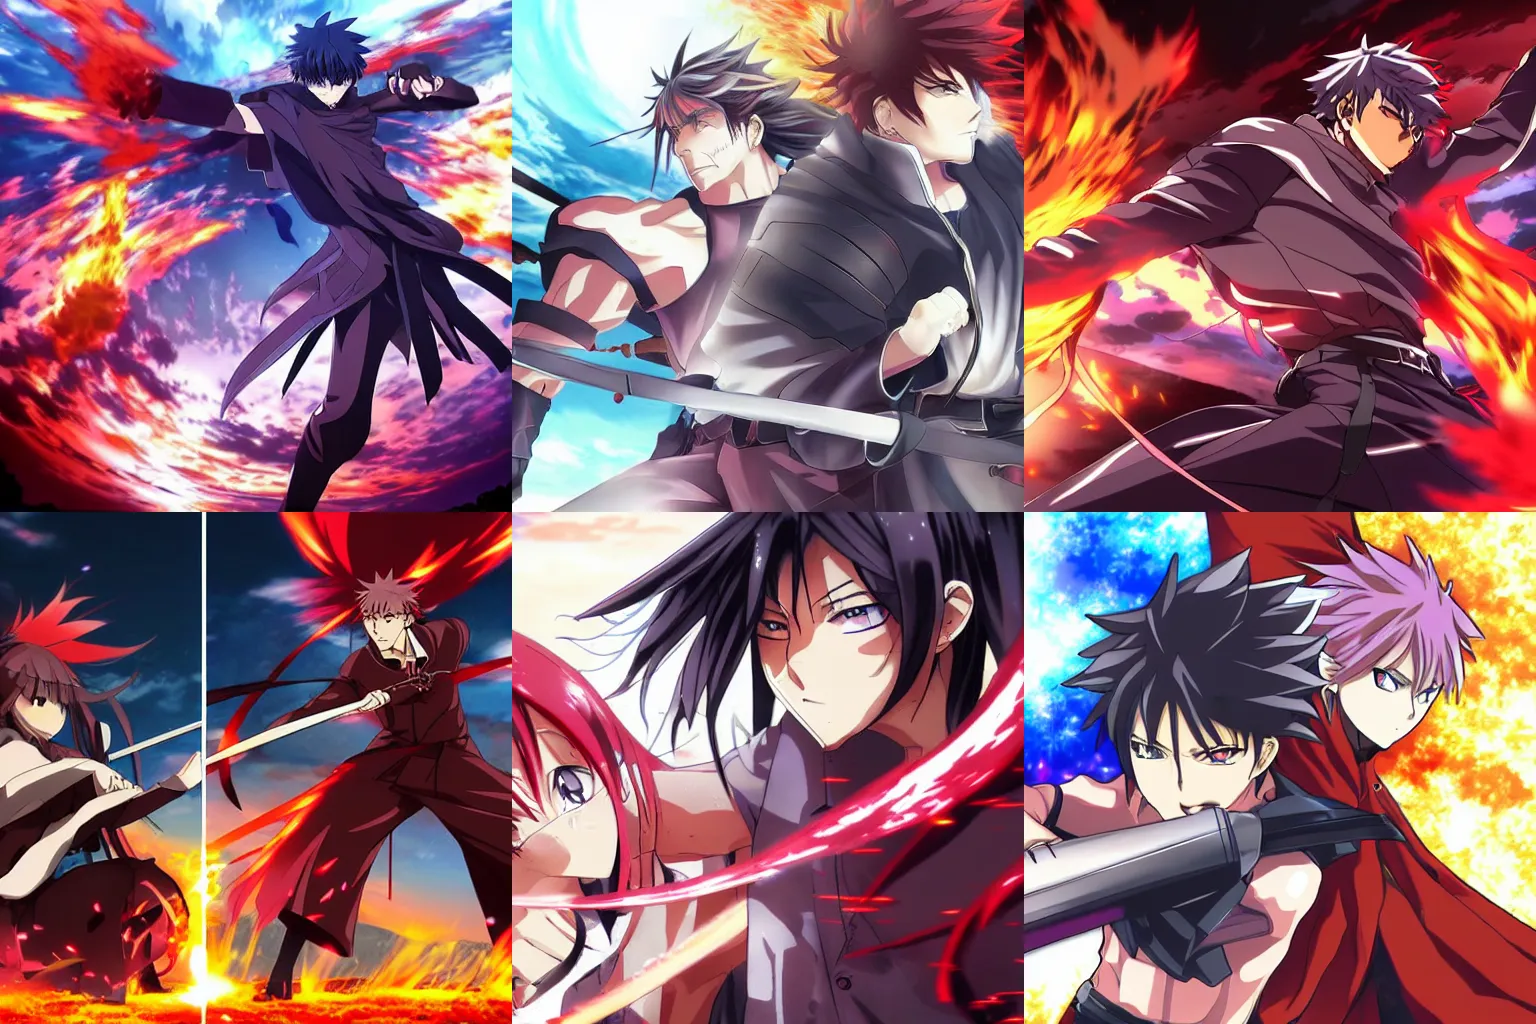 Prompt: intense anime battle, fiery battlefield, art by anime studio ufotable.